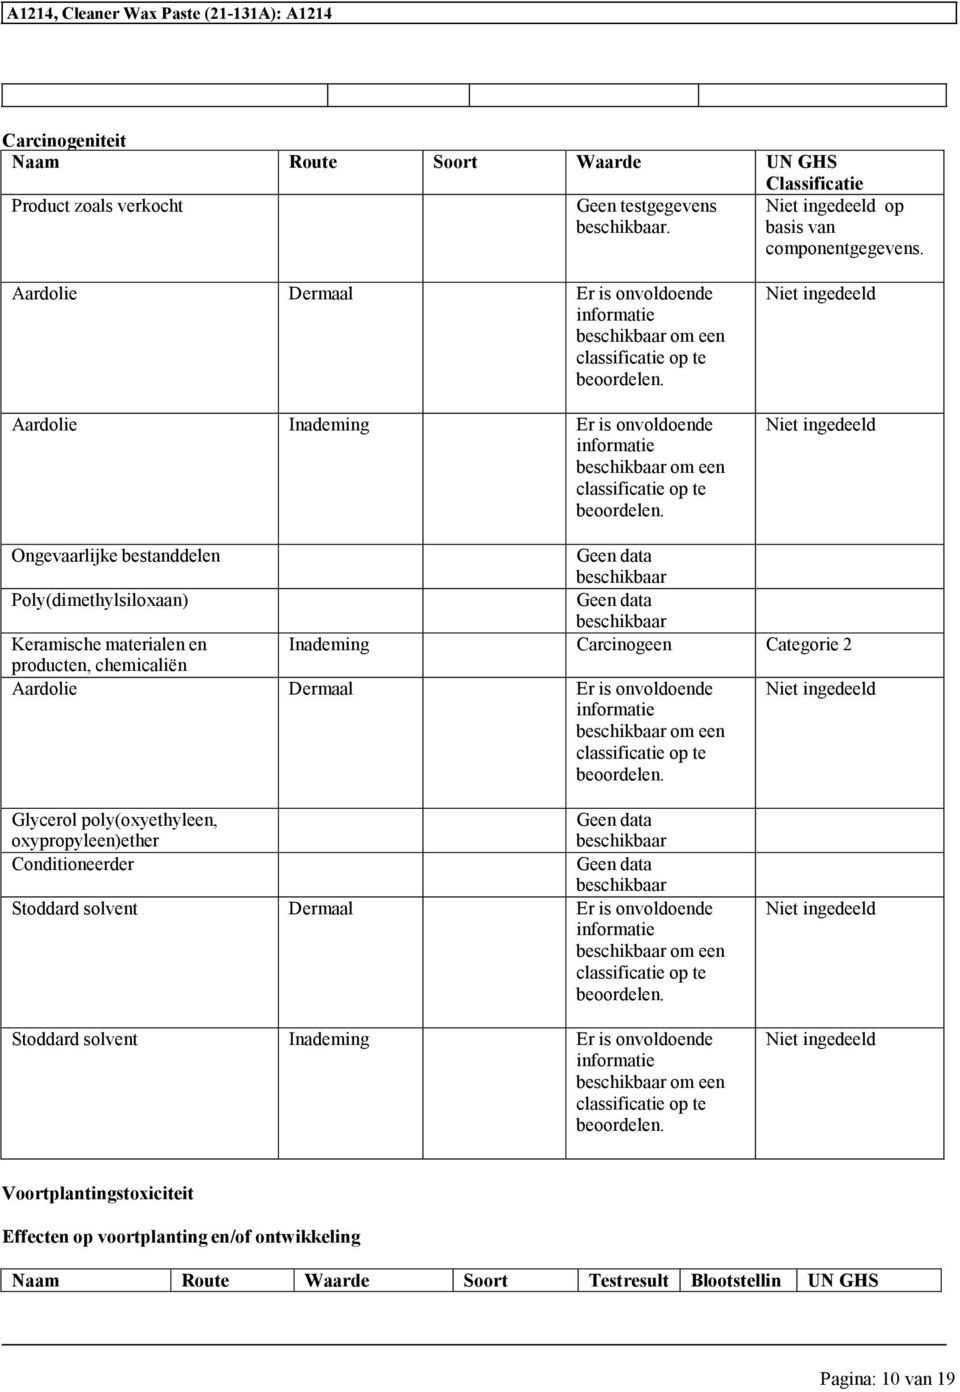 Carcinogeen Categorie 2 producten, Aardolie Dermaal om een classificatie Glycerol poly(oxyethyleen, Conditioneerder Dermaal om een classificatie